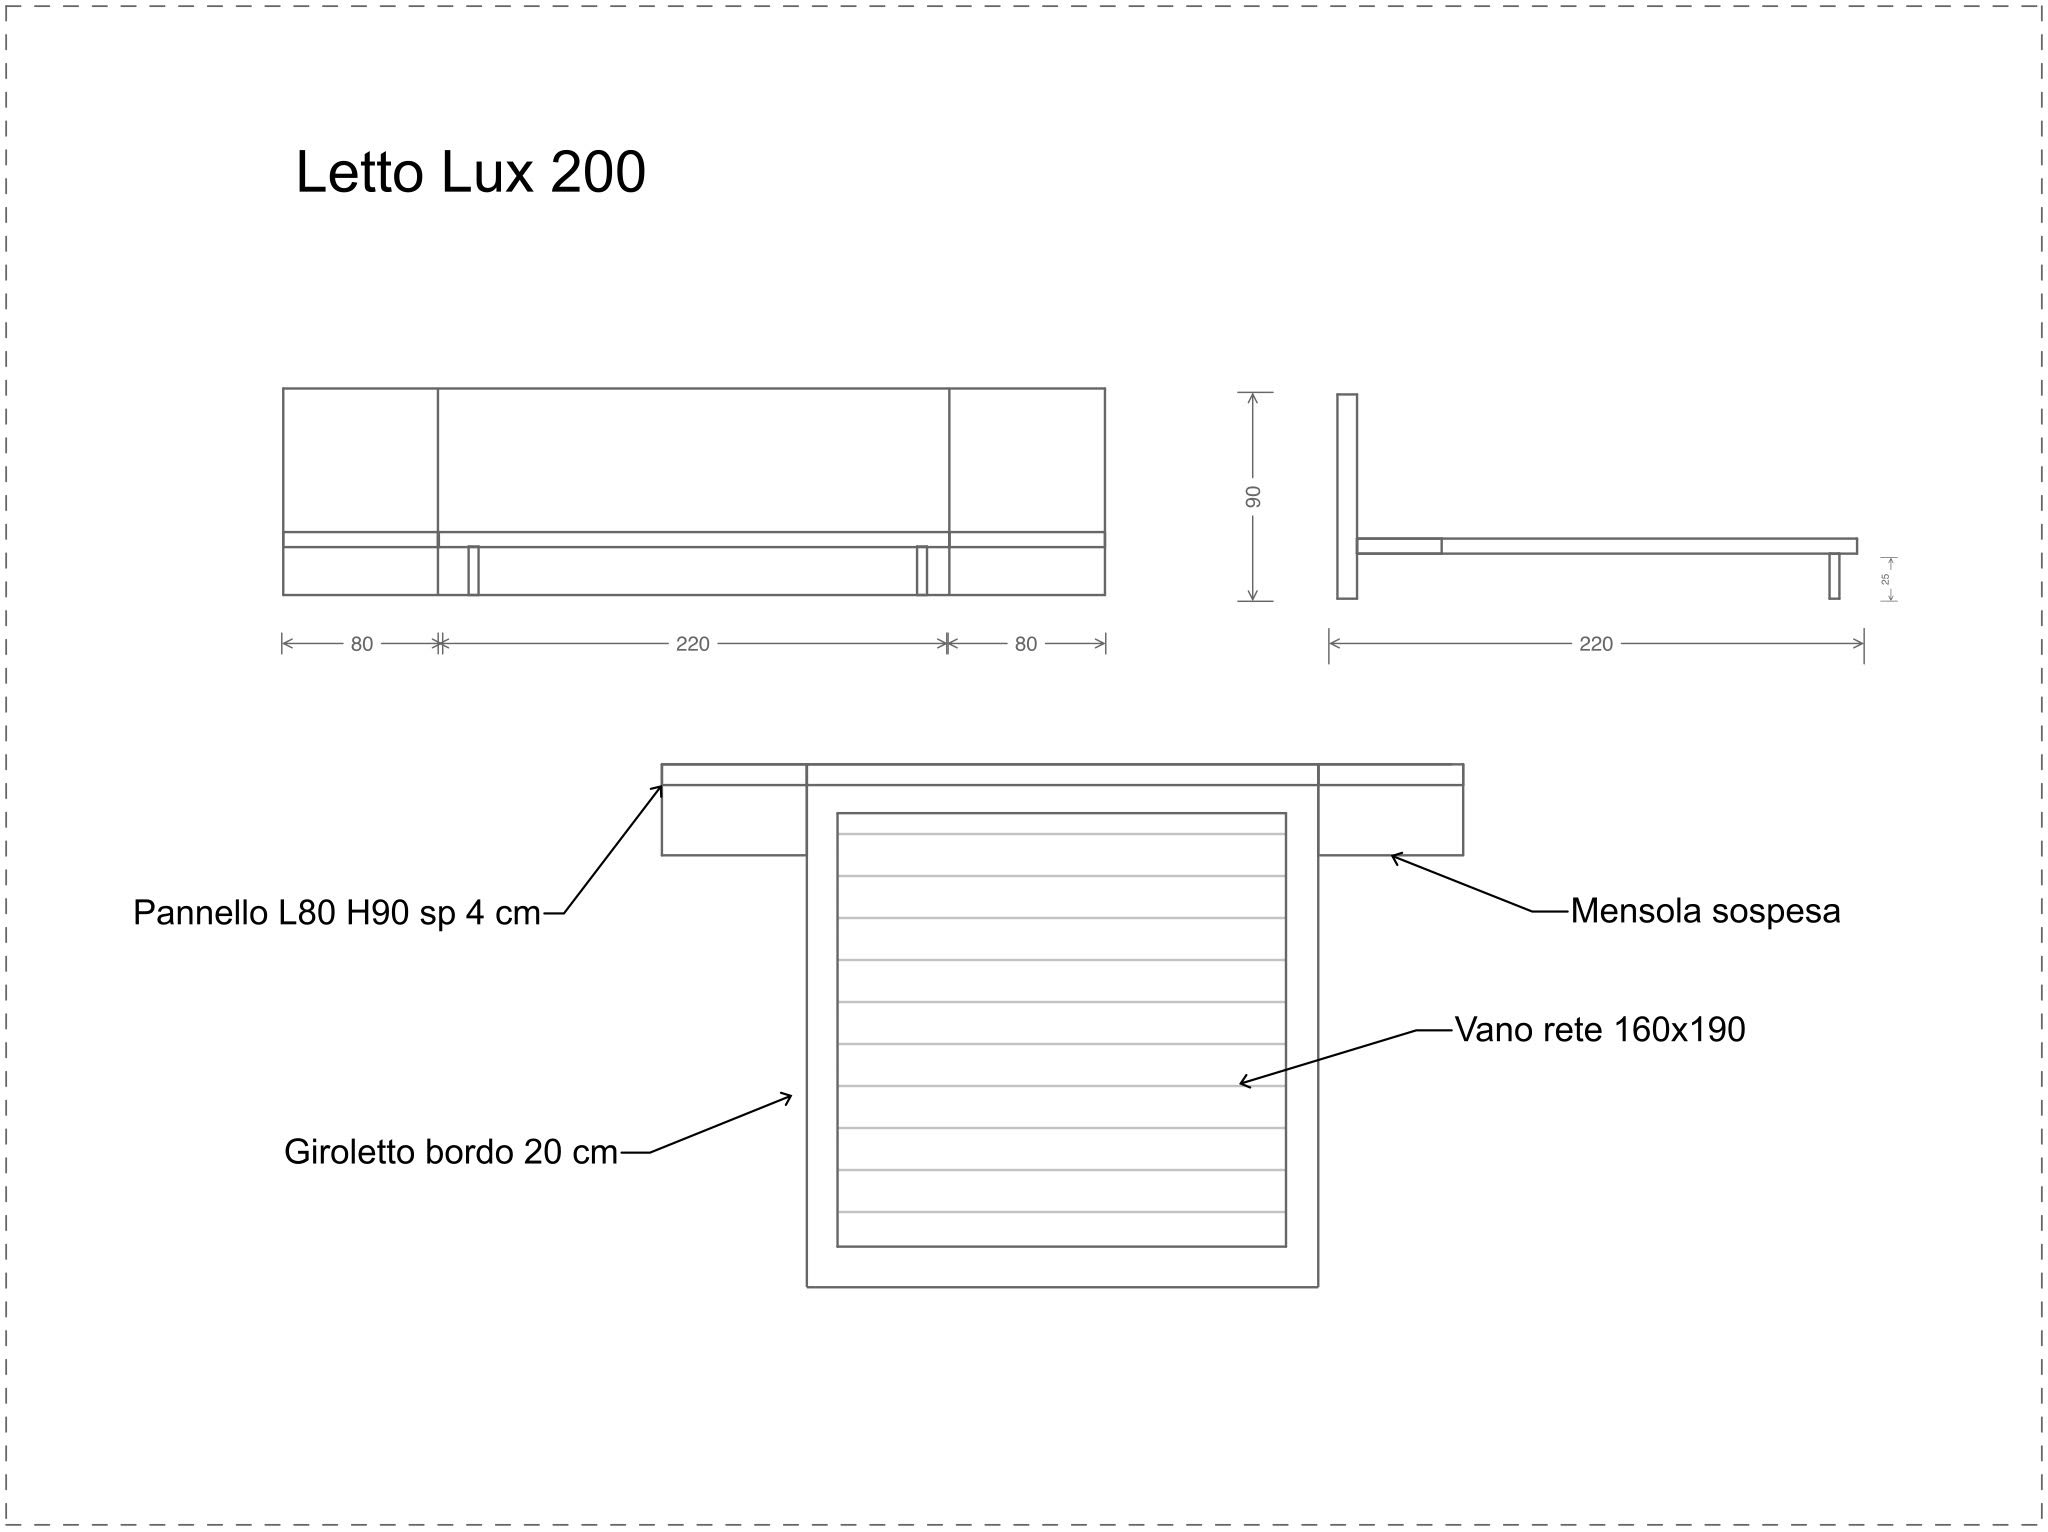 Letto matrimoniale testiera in legno con comodini integrati - Lux 200 -  XLAB Design